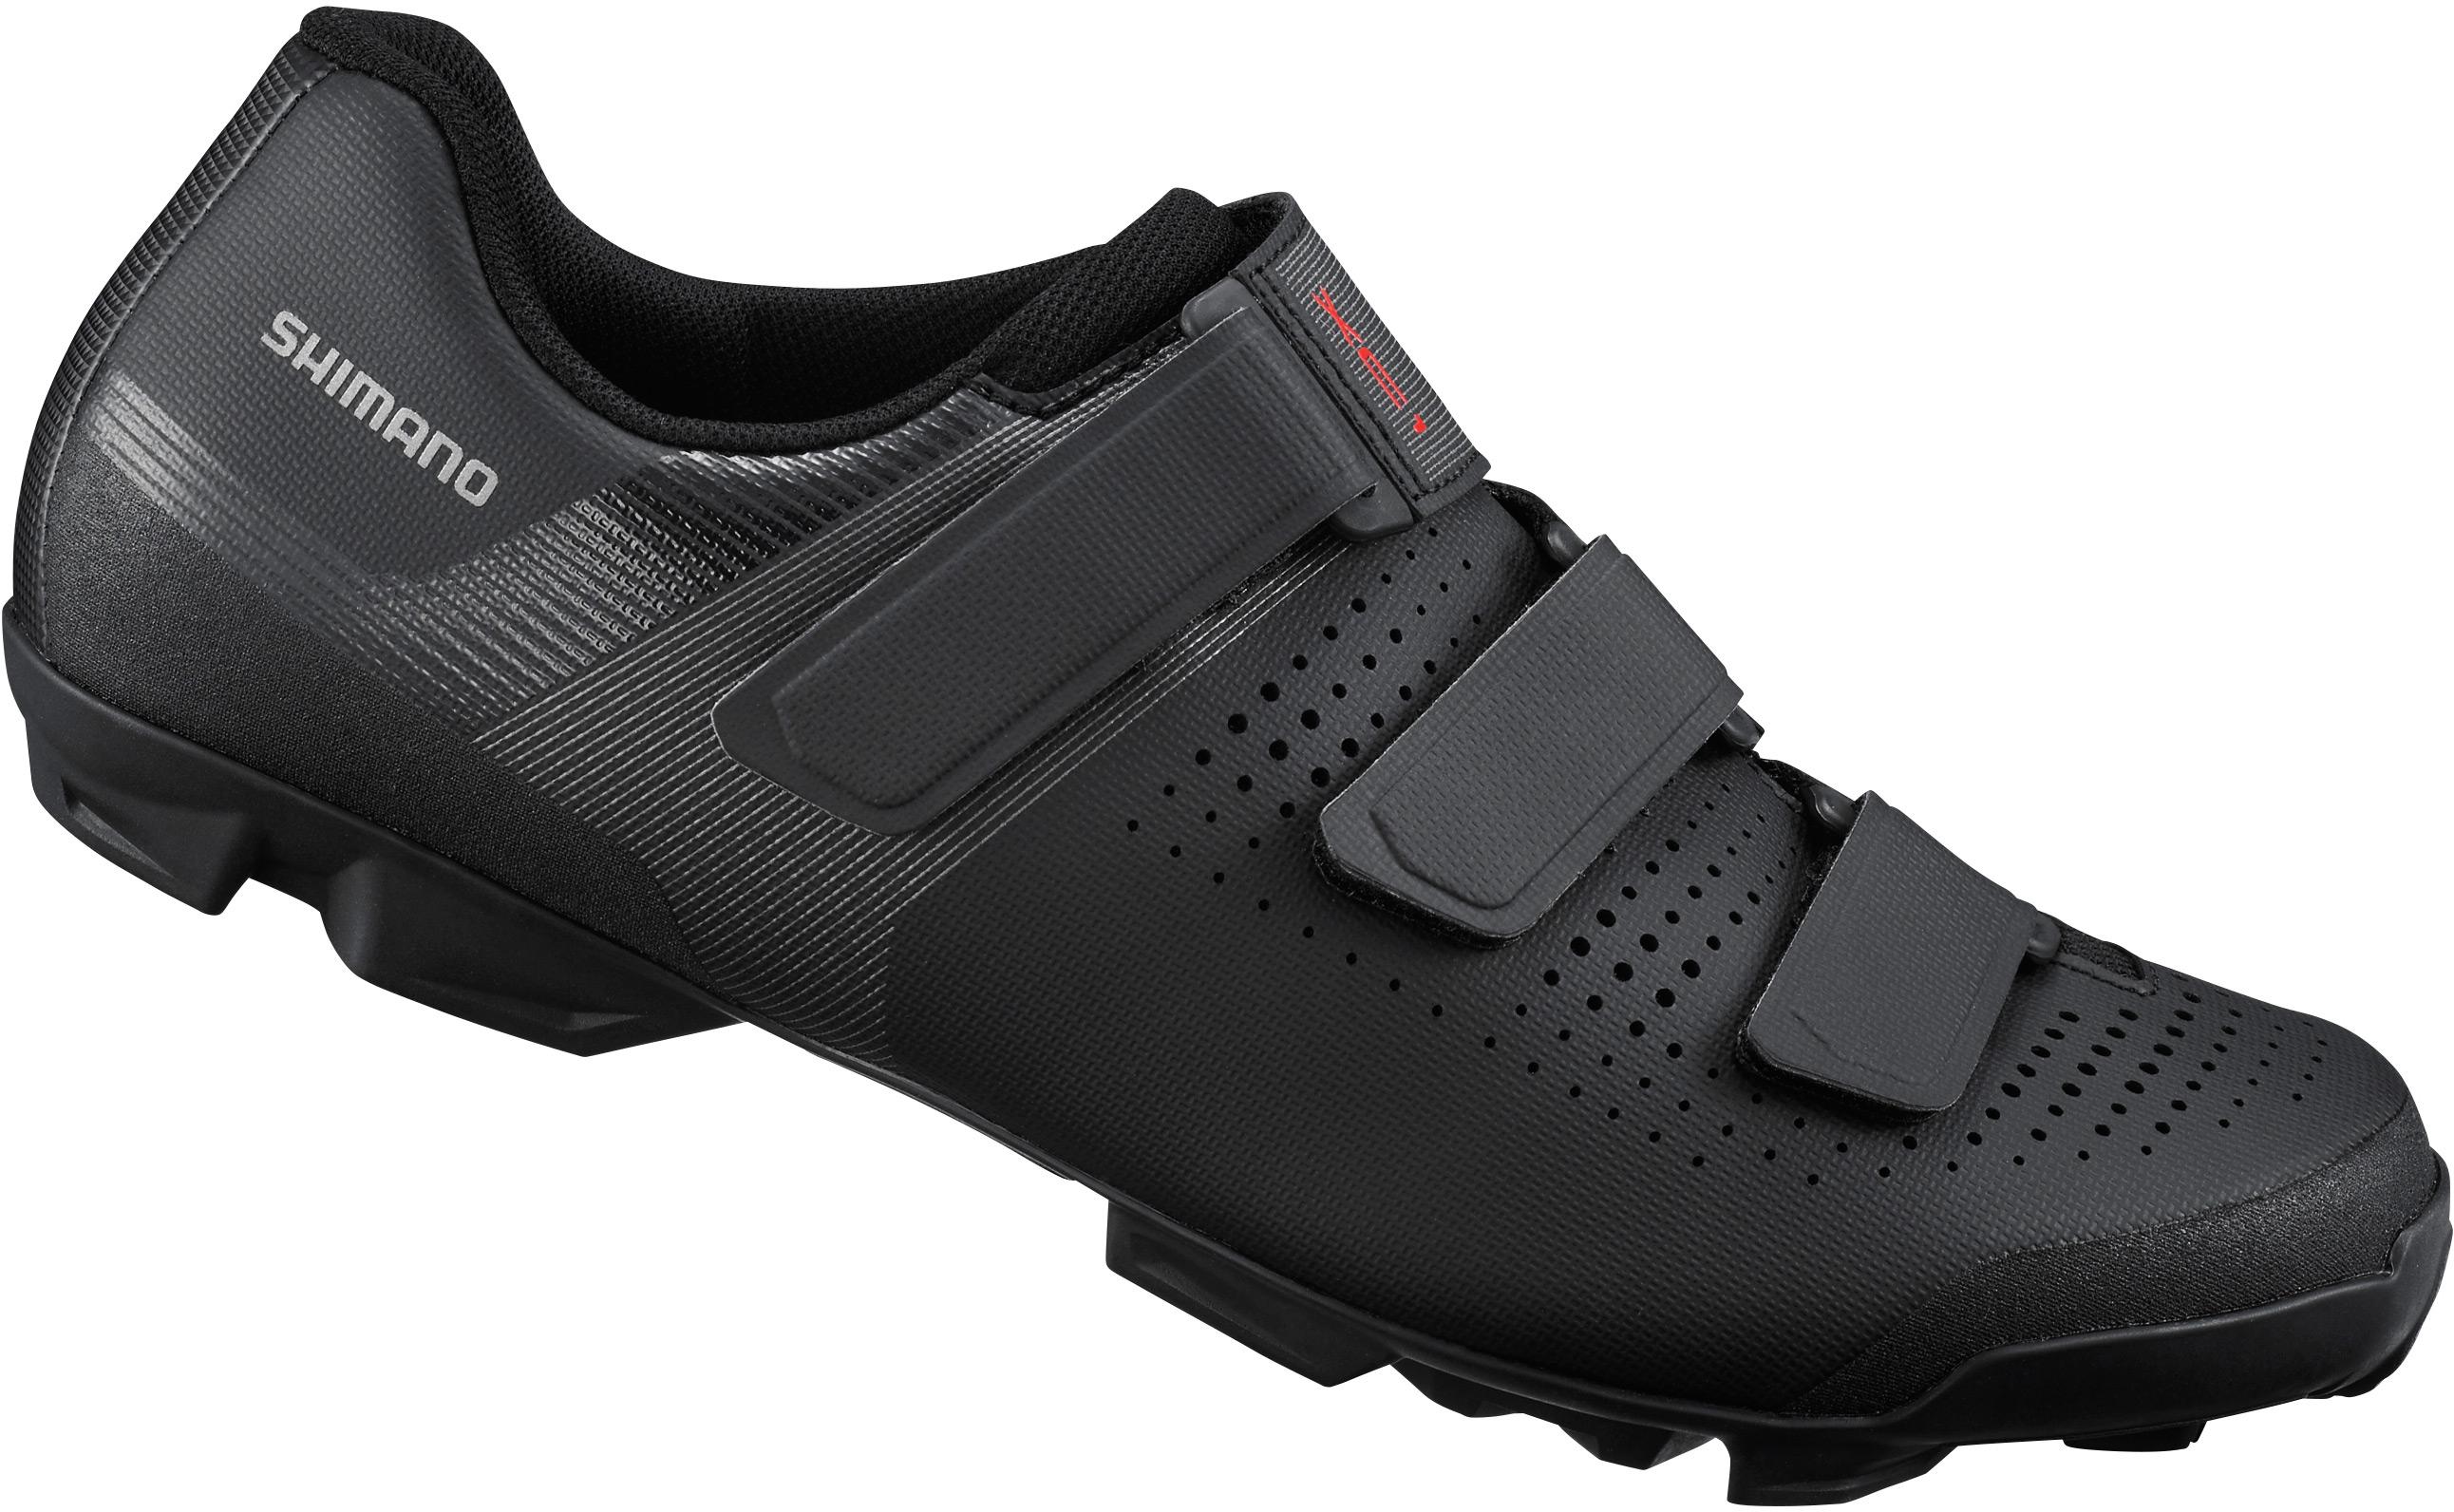 Shimano Xc100 Mtb Spd Shoes - Black